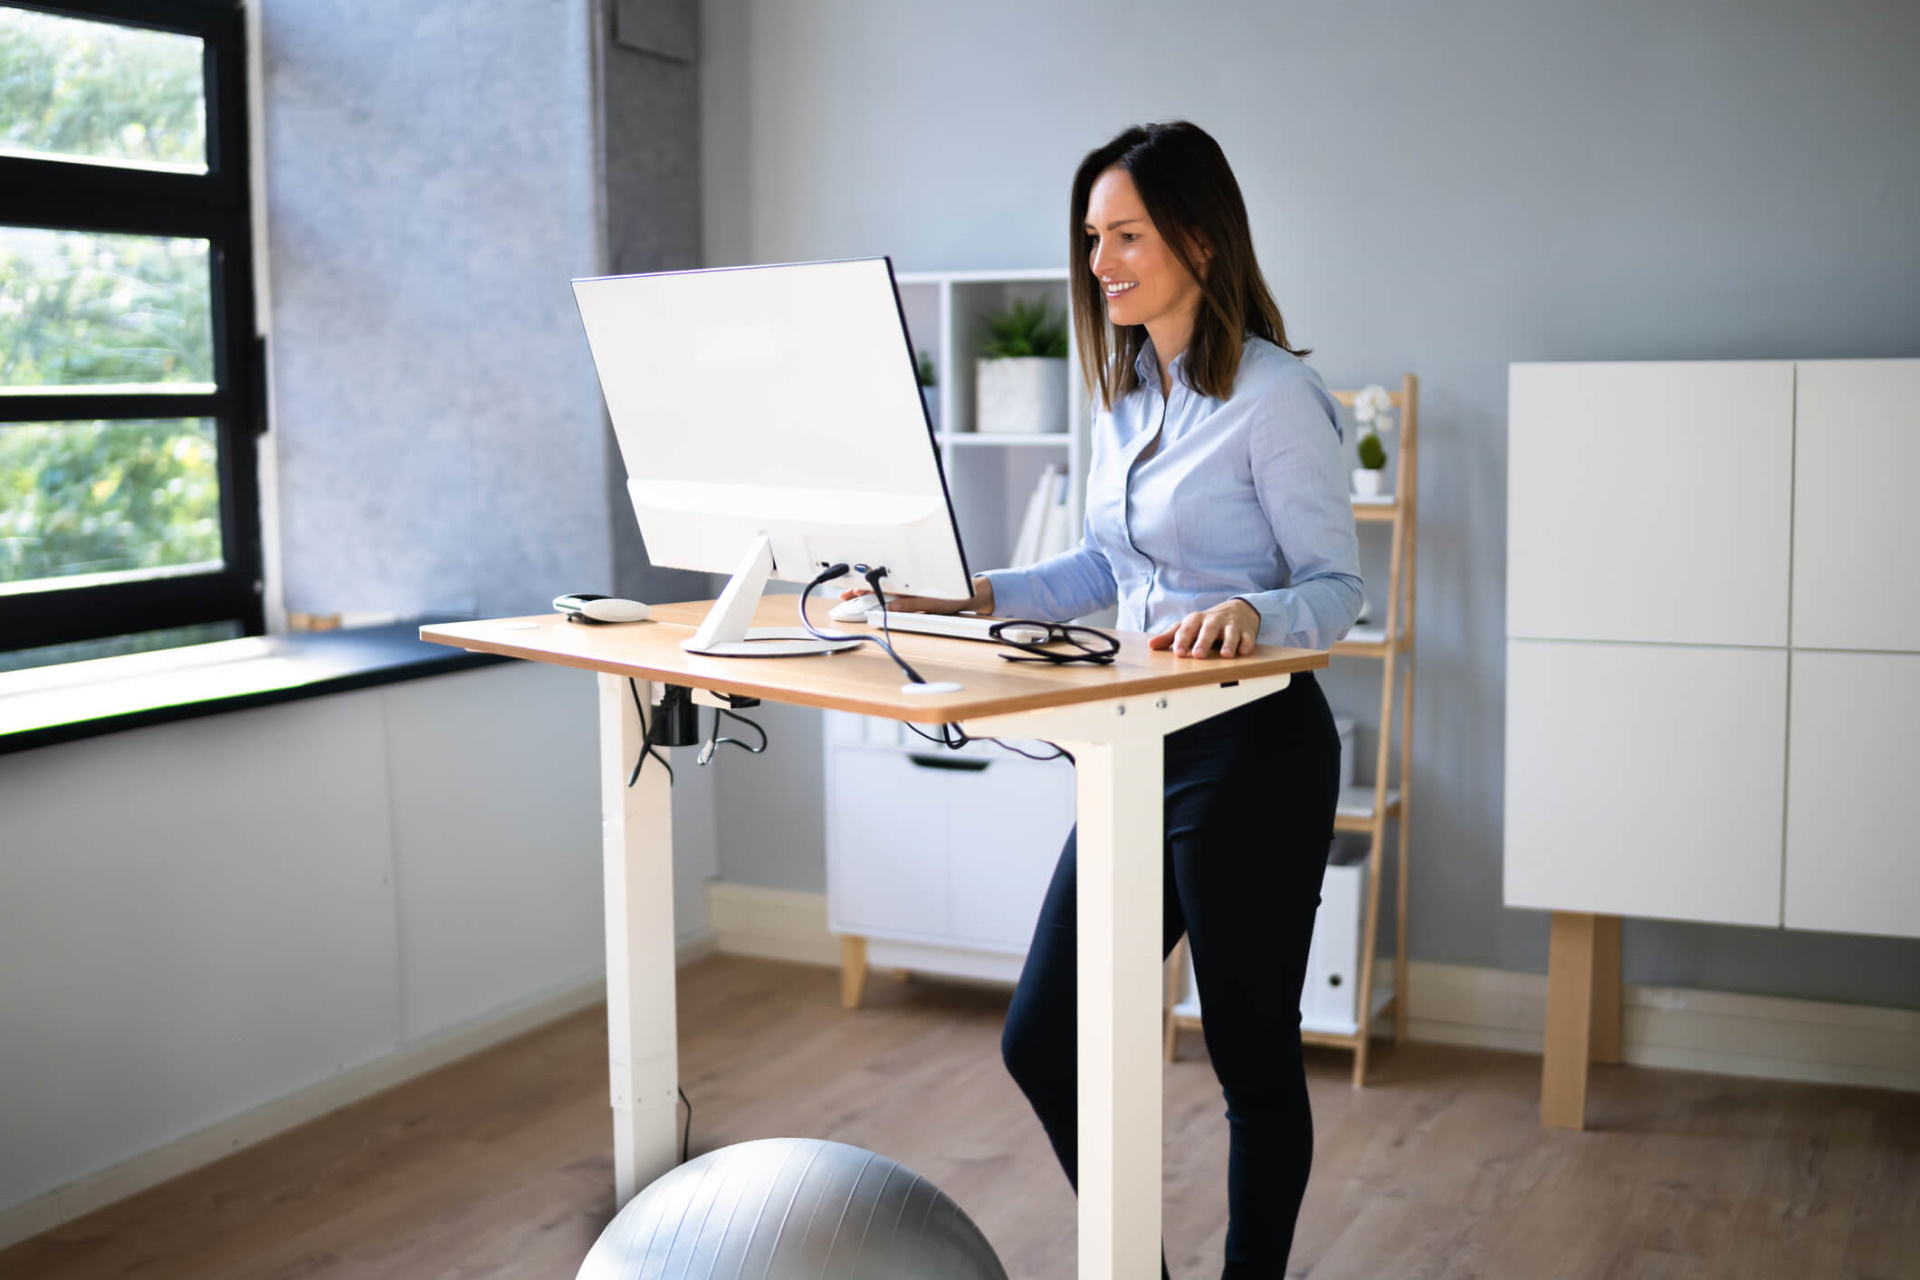 Dvižna pisalna miza za večjo učinkovitost in boljše počutje pri delu